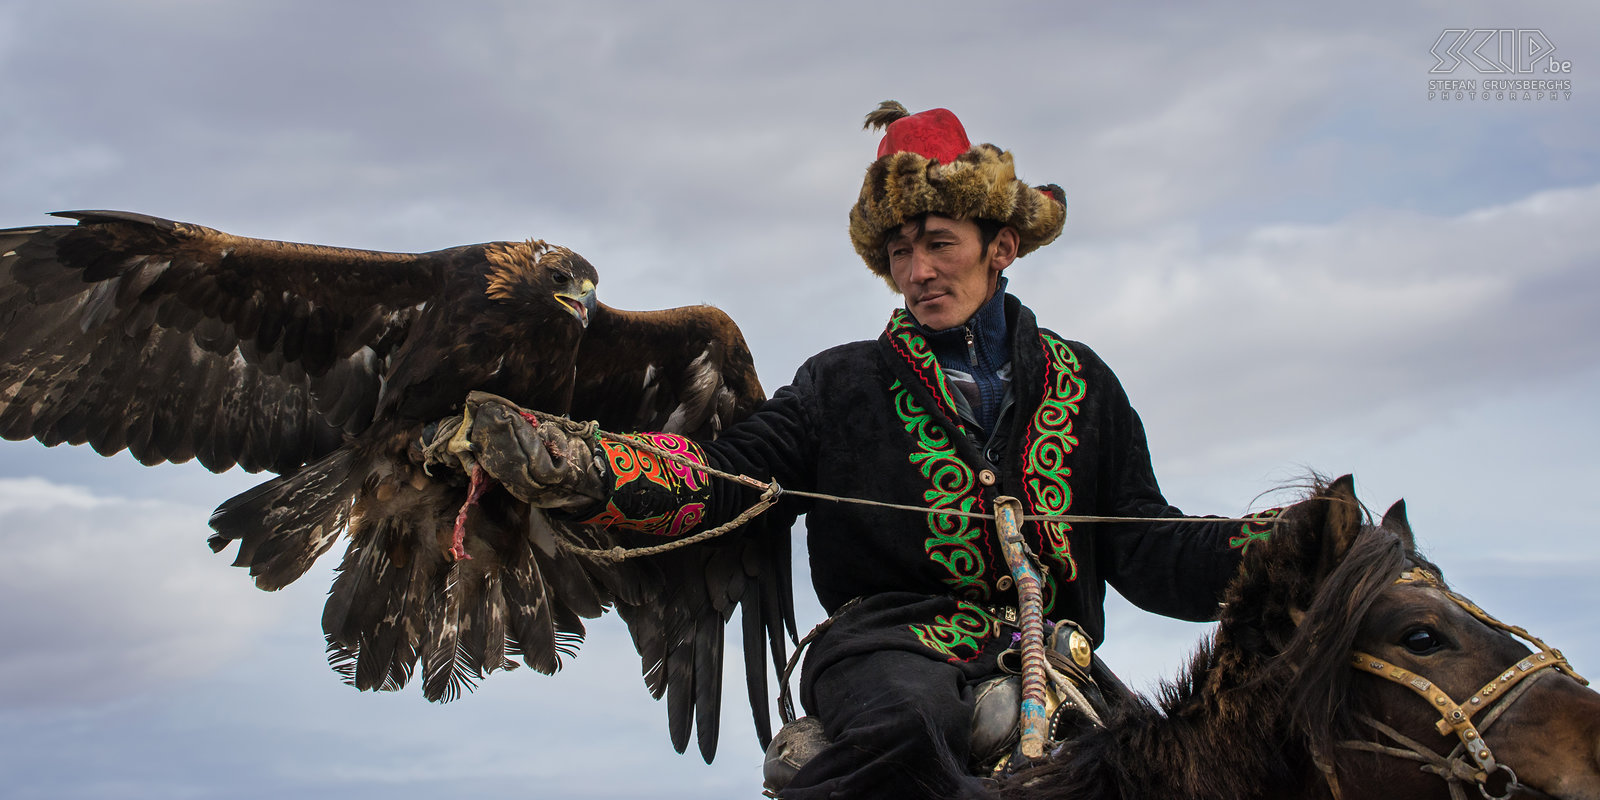 Ulgii - Golden Eagle Festival Een Kazakse arendjager noemt kusbegi/kushbegi/qusbegi of berkutchi.  Stefan Cruysberghs